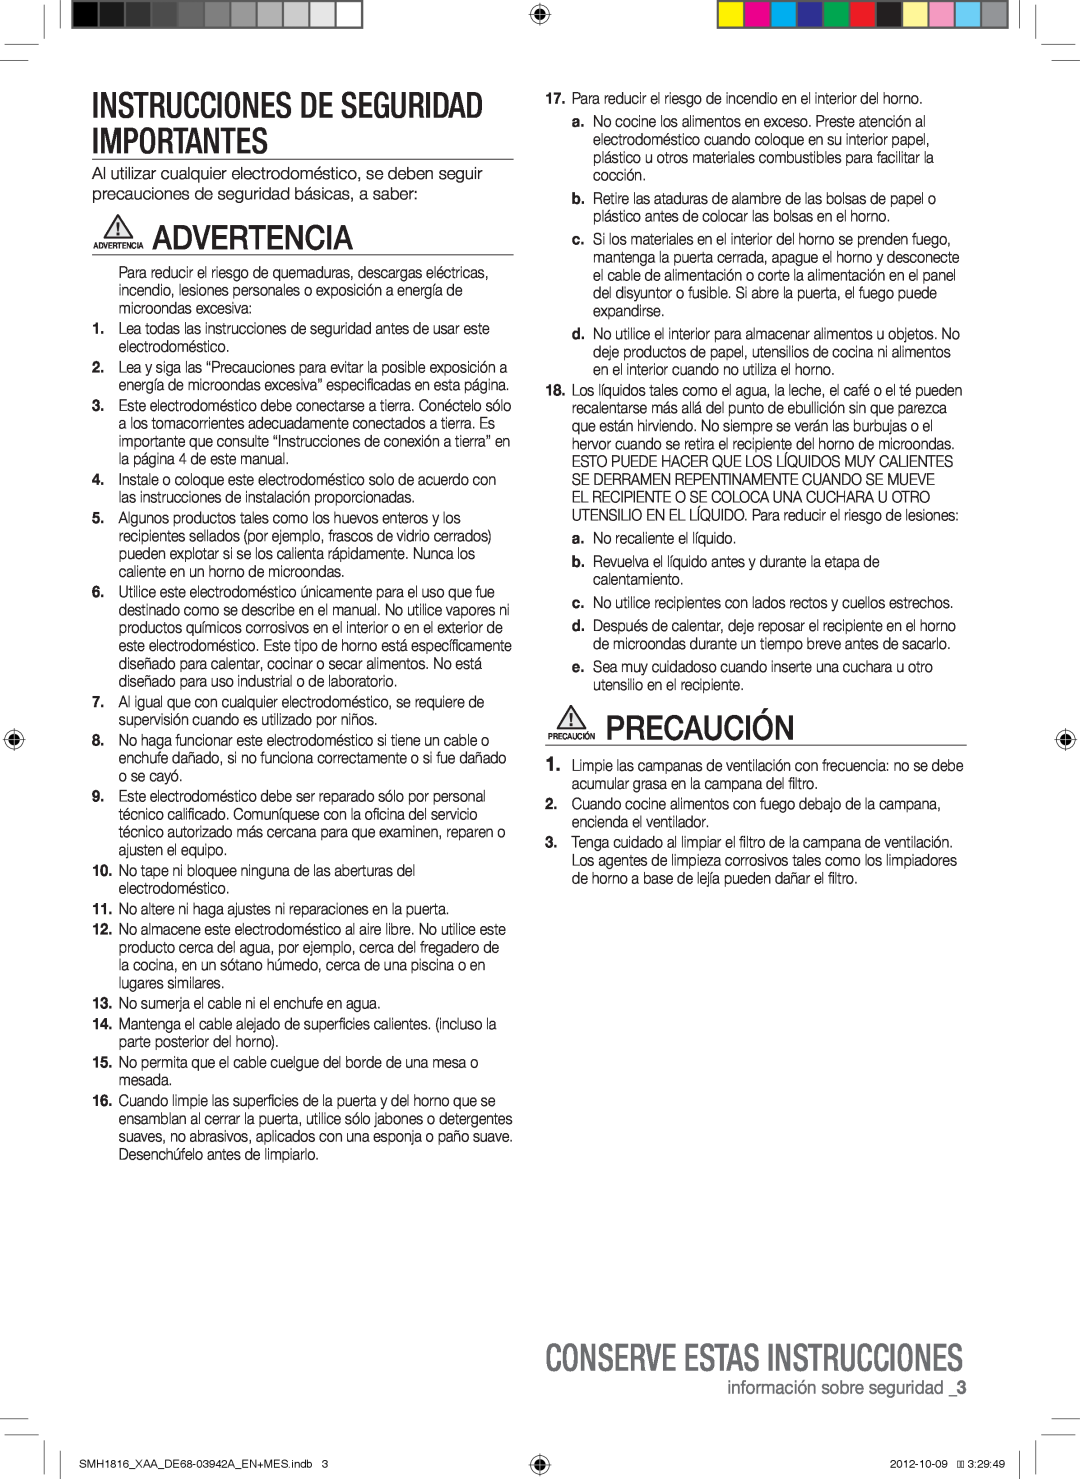 Samsung SMH1816S Instrucciones De Seguridad Importantes, Conserve Estas Instrucciones, información sobre seguridad 